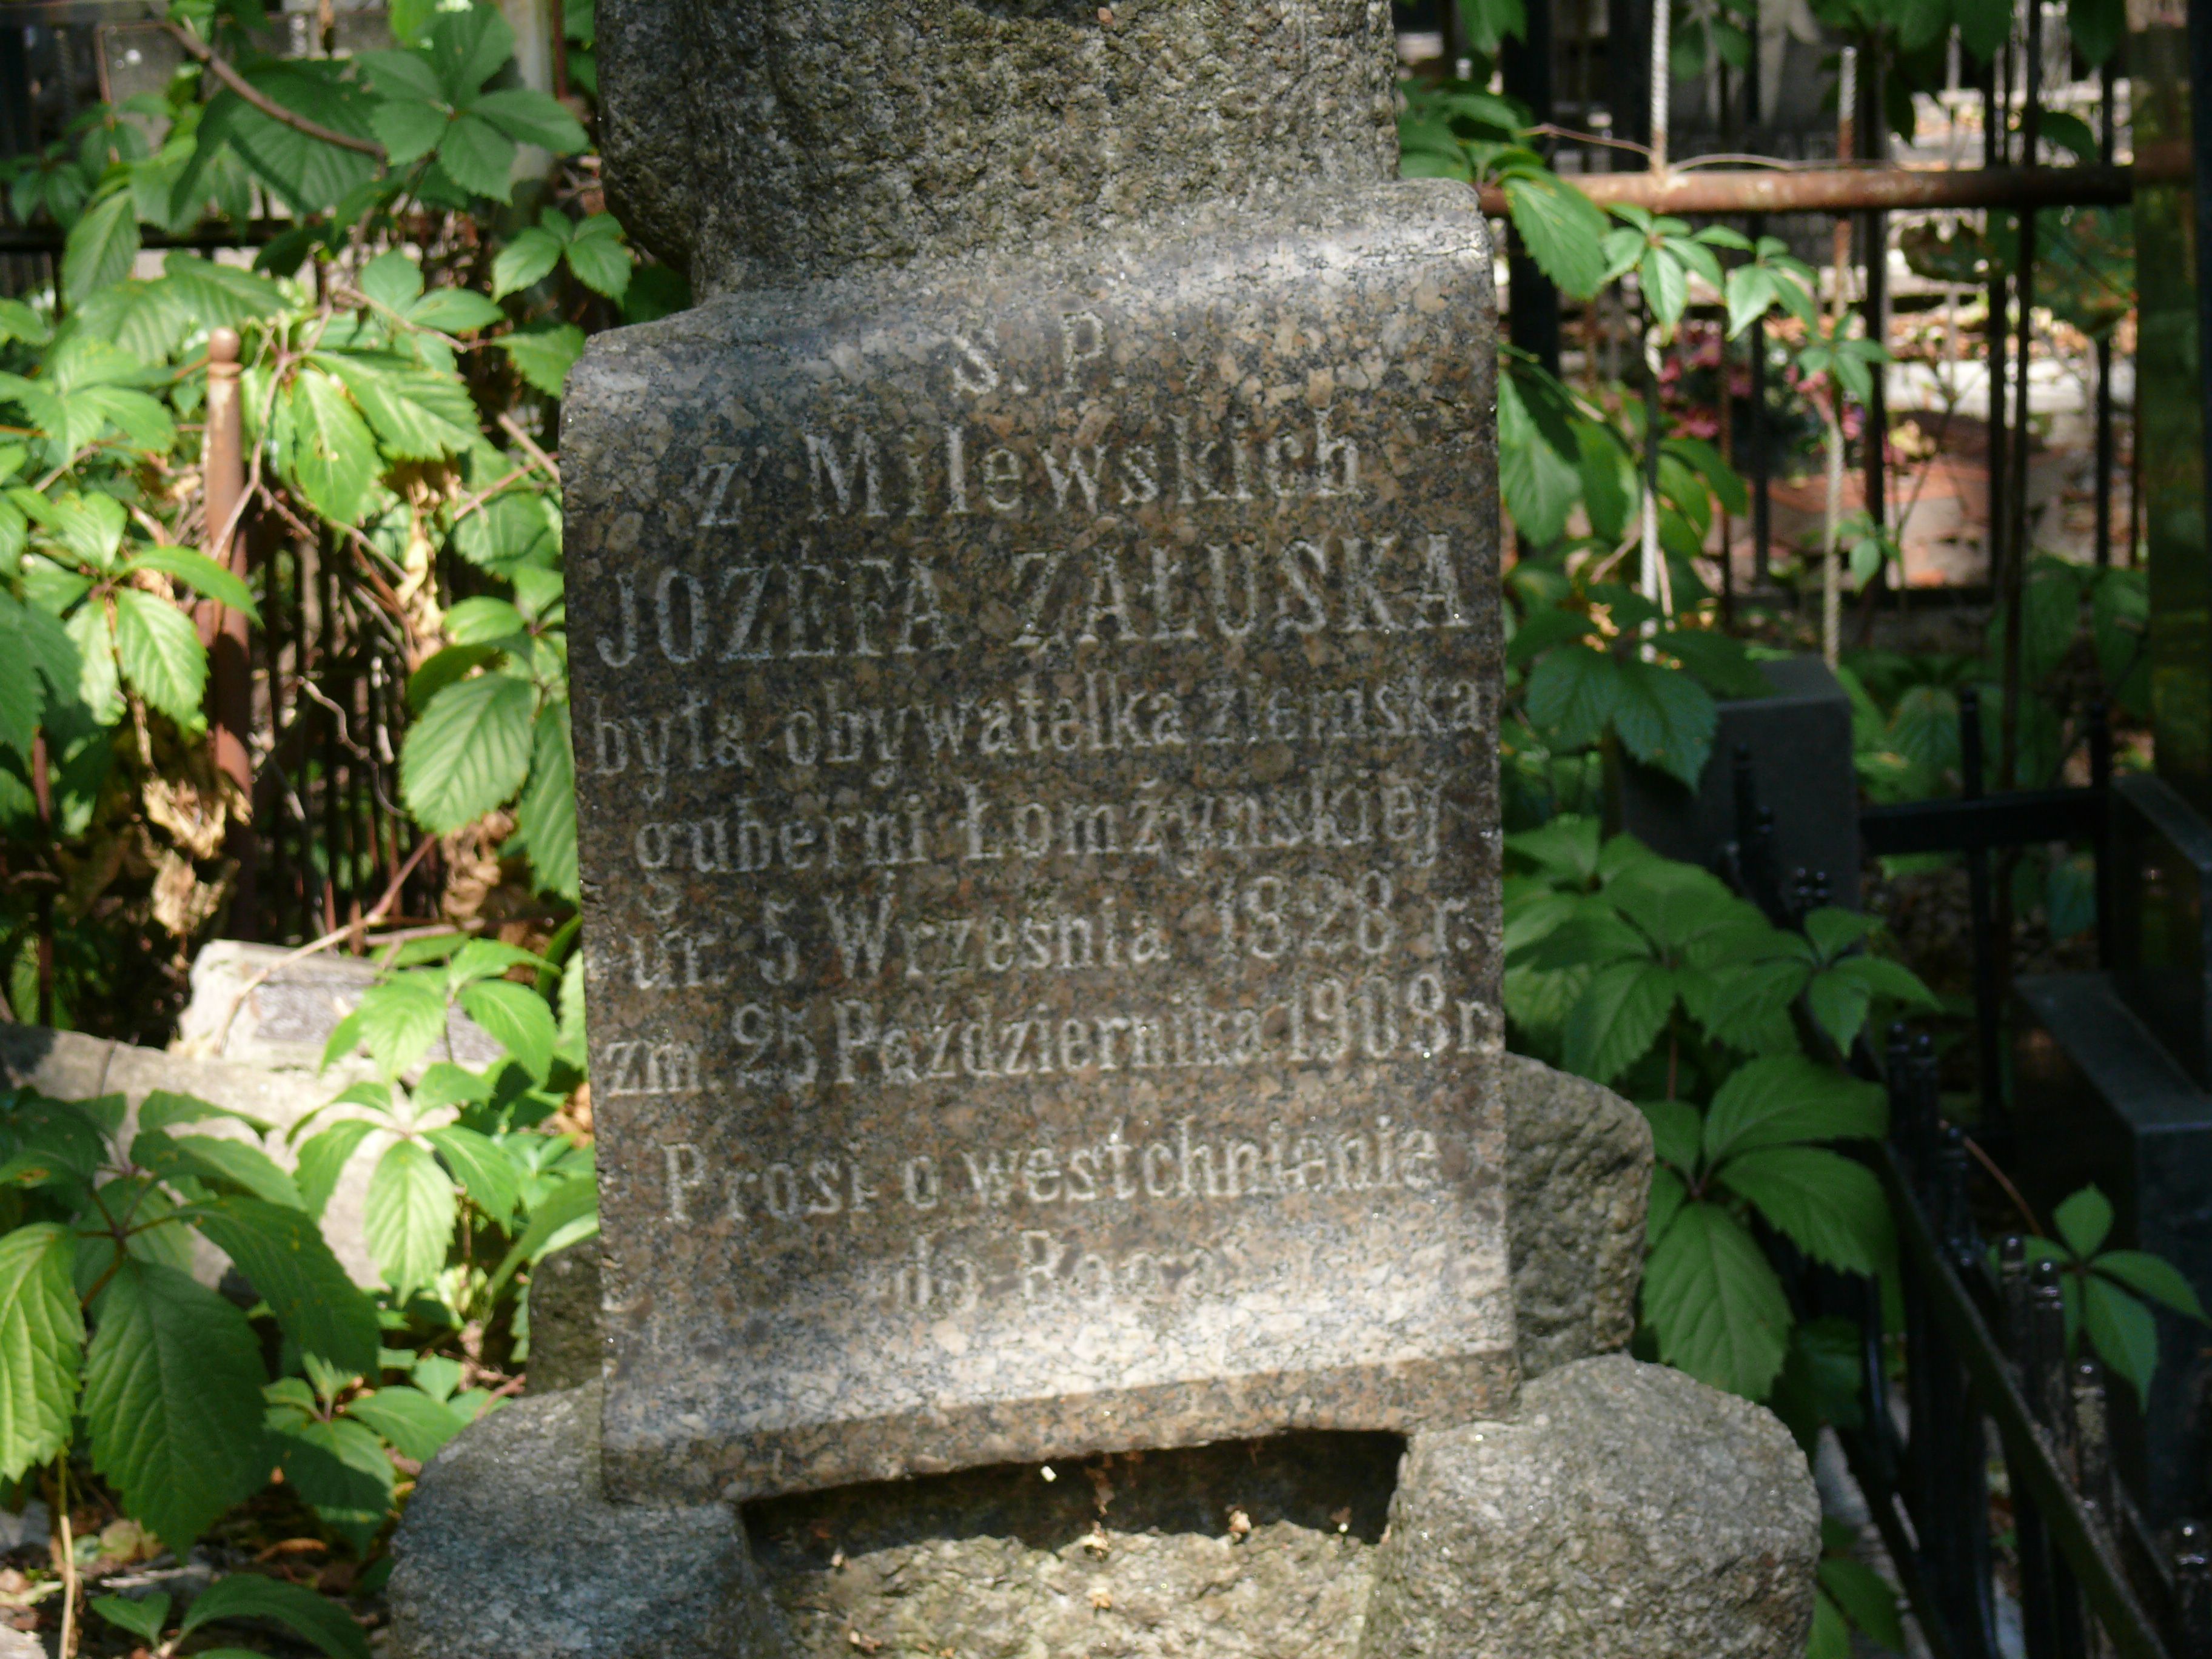 Inscription from the gravestone of Józefa Załuska